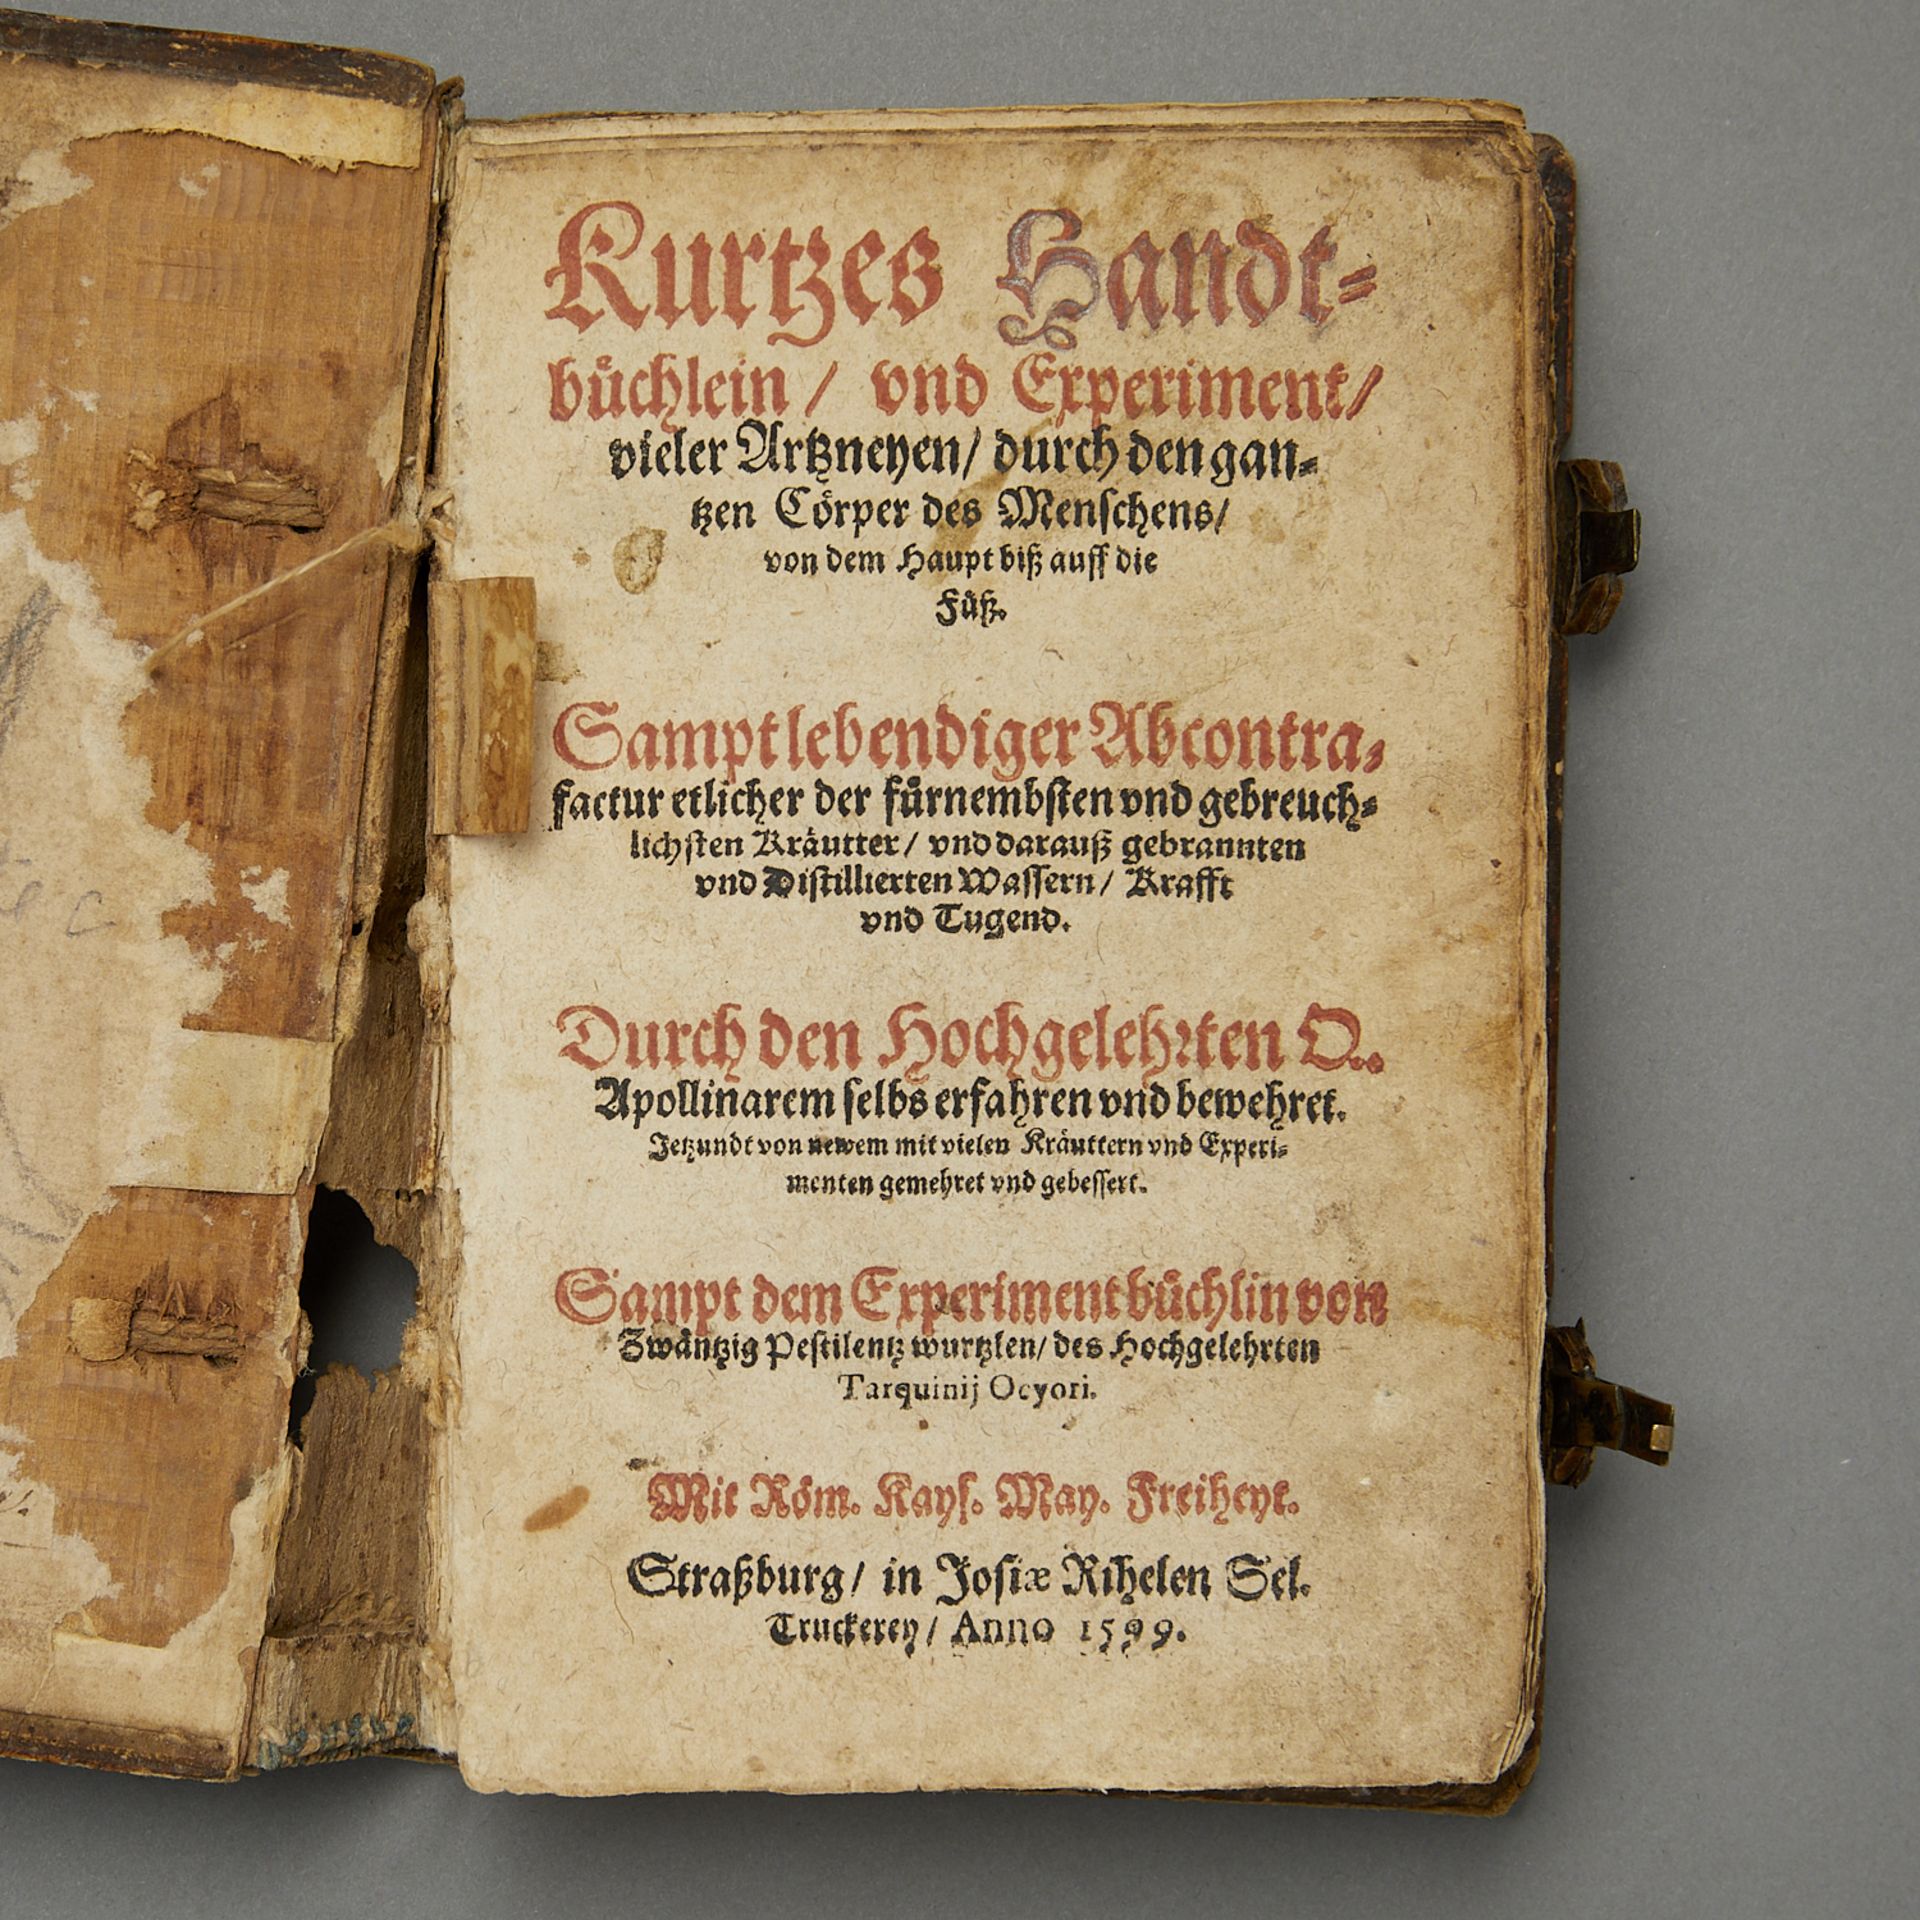 Ryff "Kurtzes Handtbuchlein und Experiment" 1599 - Image 2 of 16